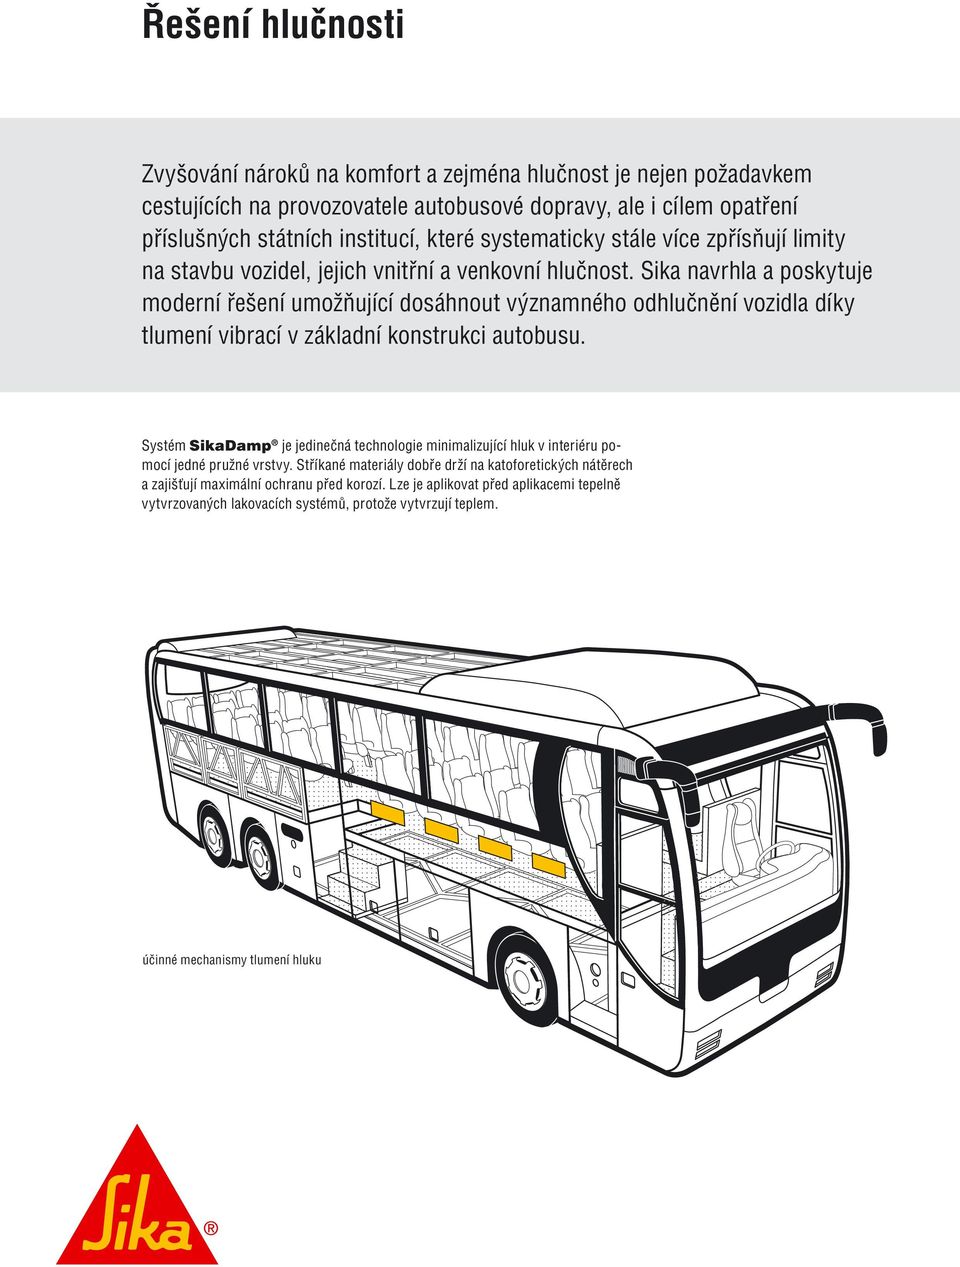 Sika navrhla a poskytuje moderní řešení umožňující dosáhnout významného odhlučnění vozidla díky tlumení vibrací v základní konstrukci autobusu.